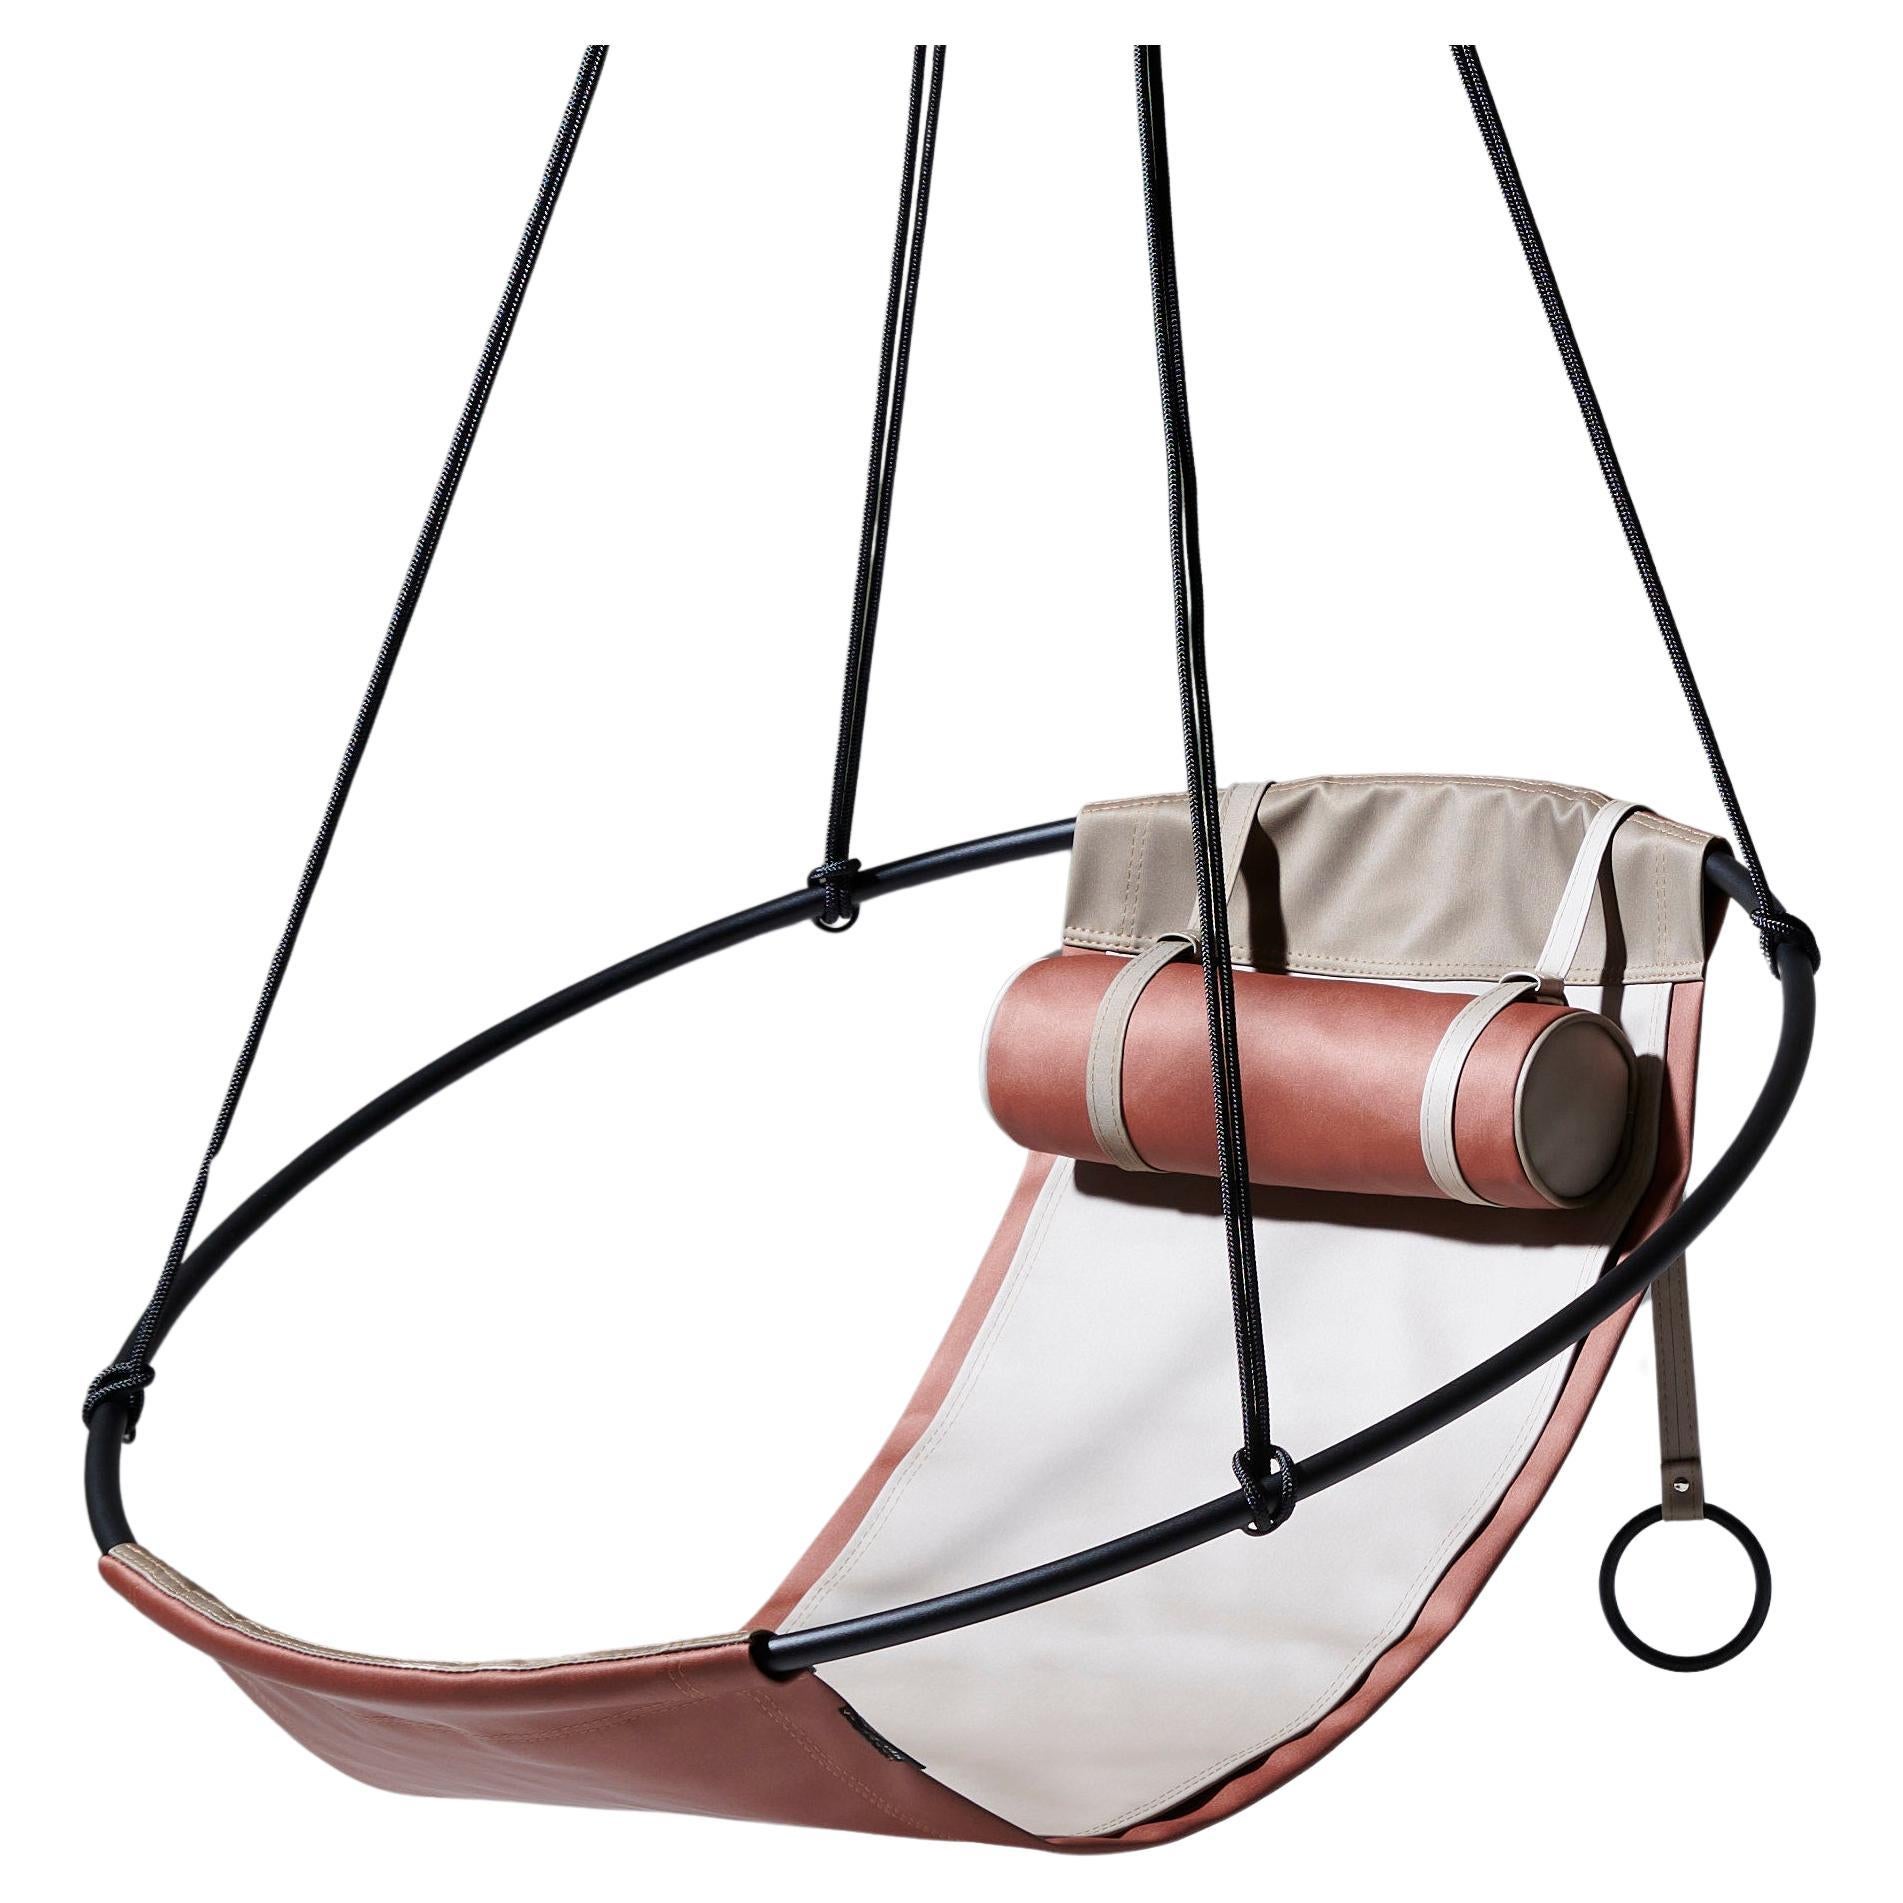 The Moderns Garden Swing Chair in Earth Tones (Chaise balançoire moderne d'extérieur dans les tons de terre)